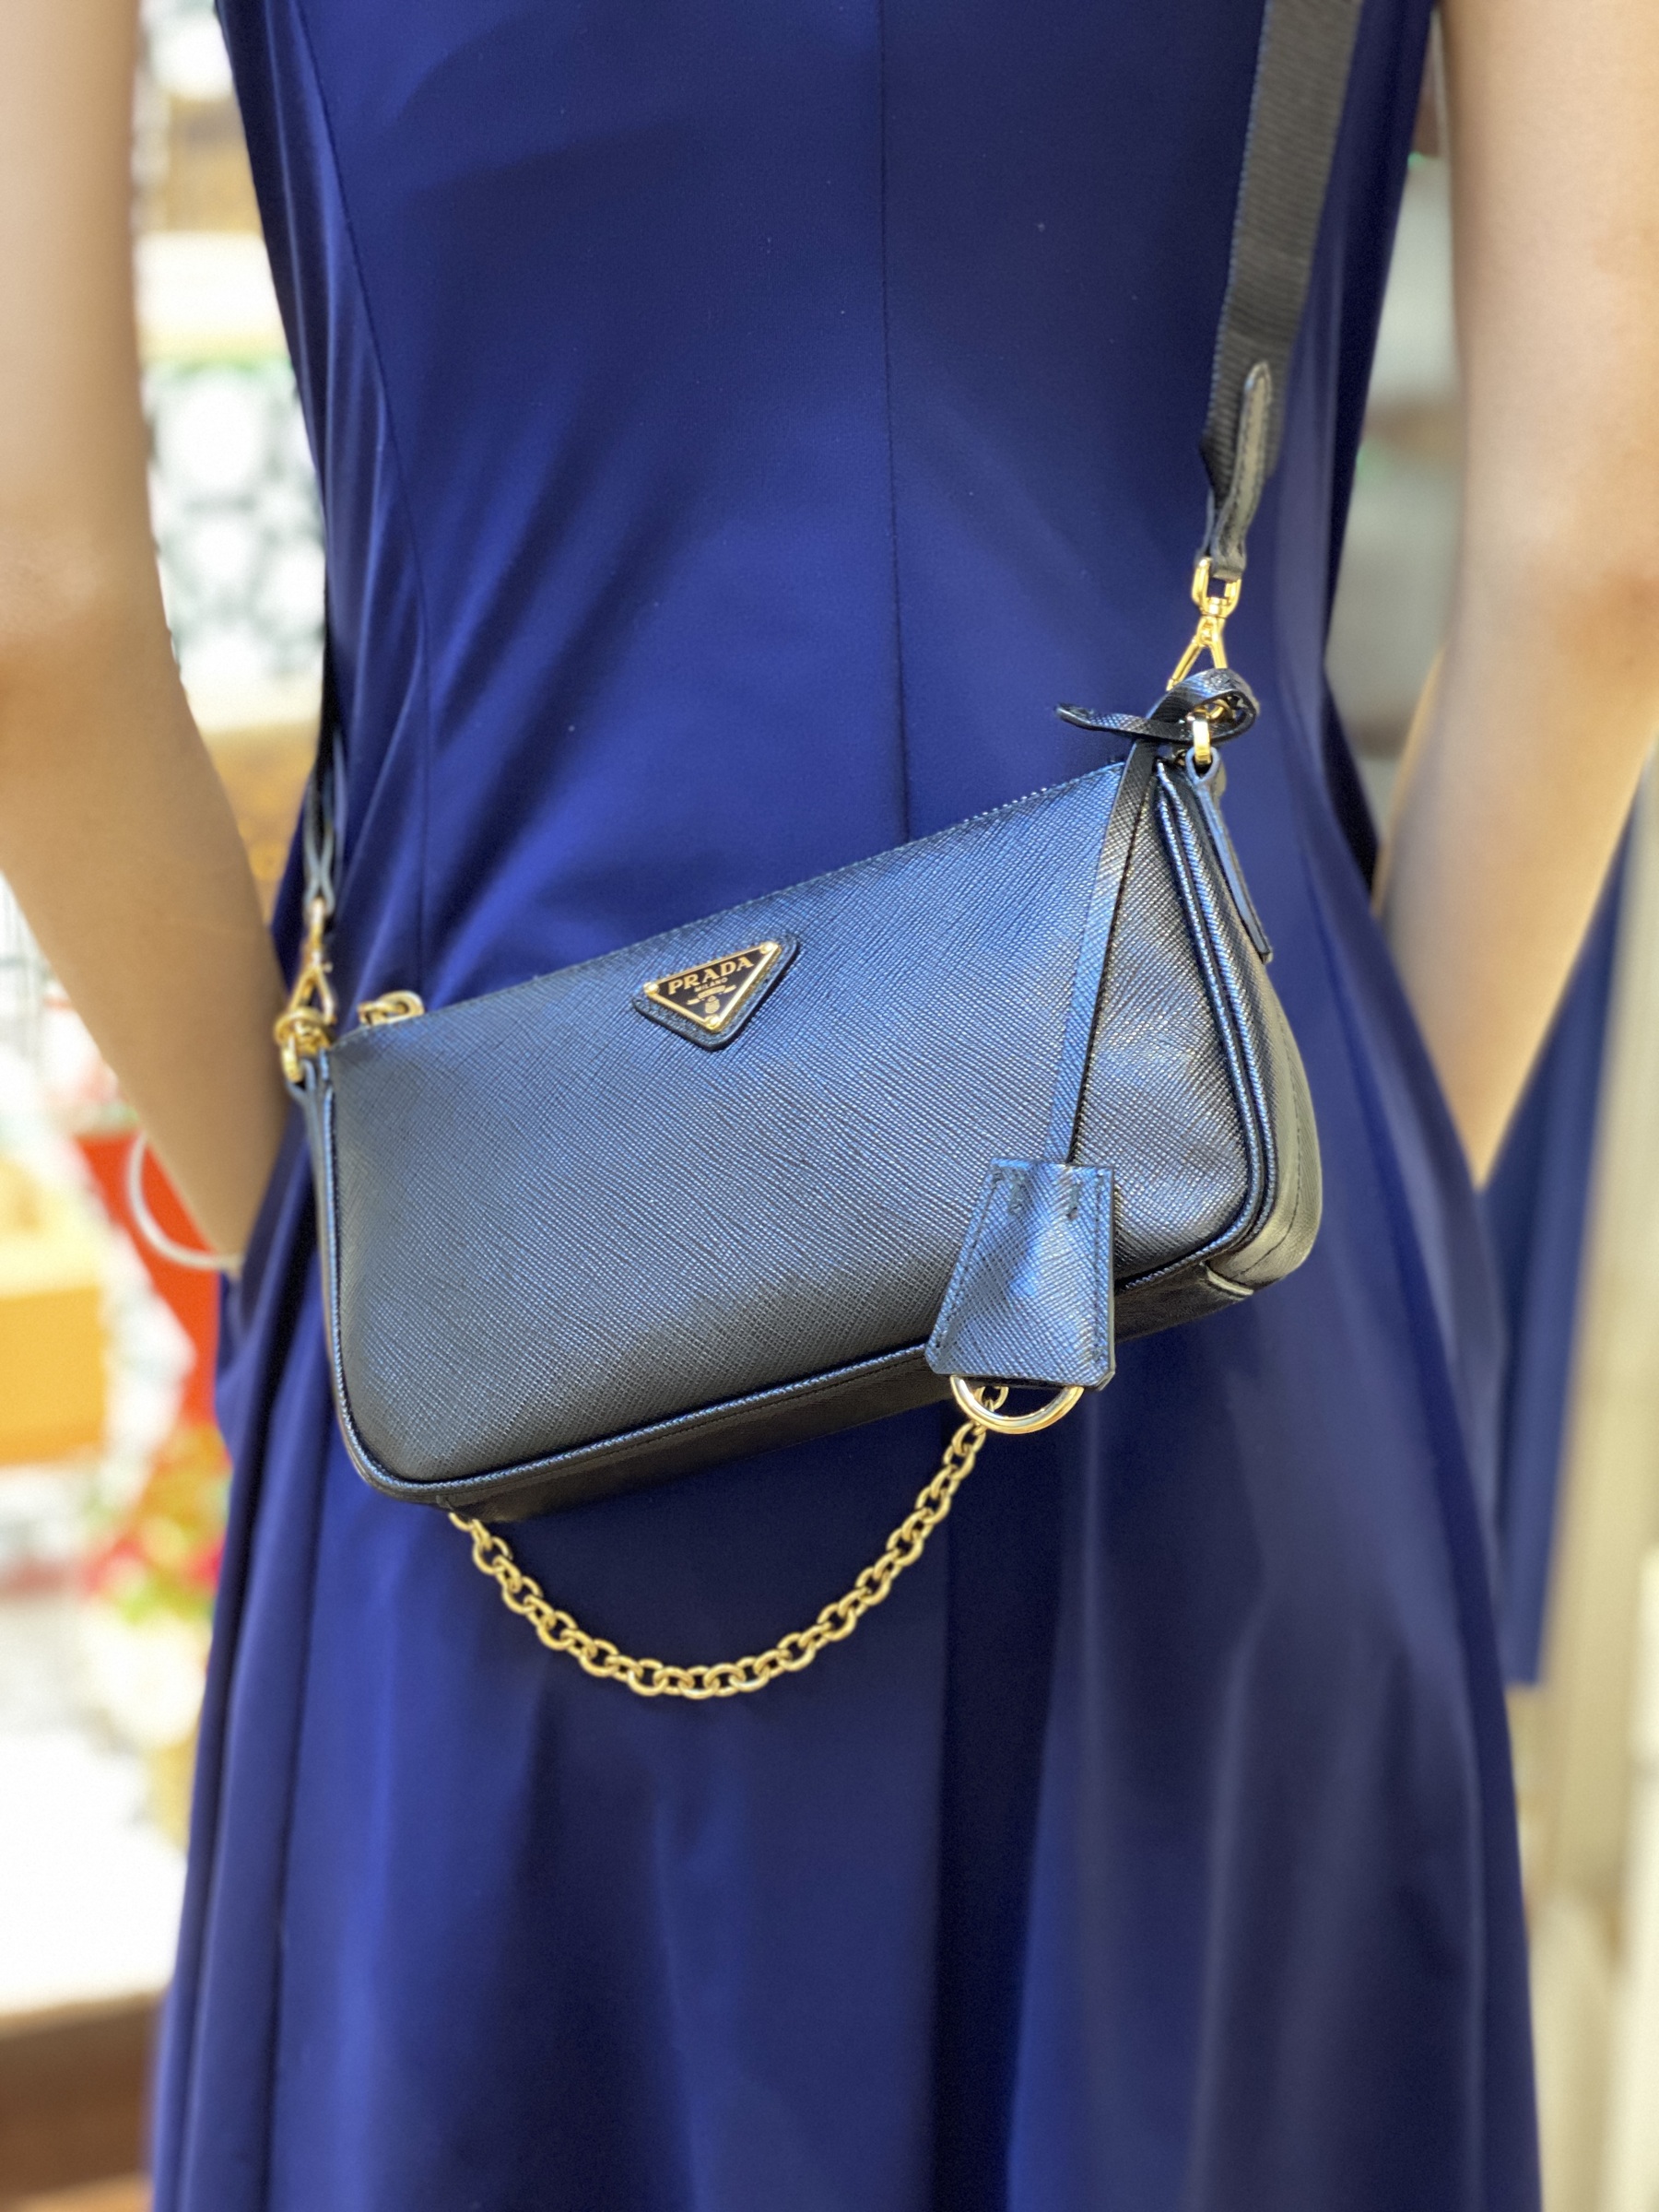 Prada, Bags, Prada Saffiano Chain Blue Leather Bag New